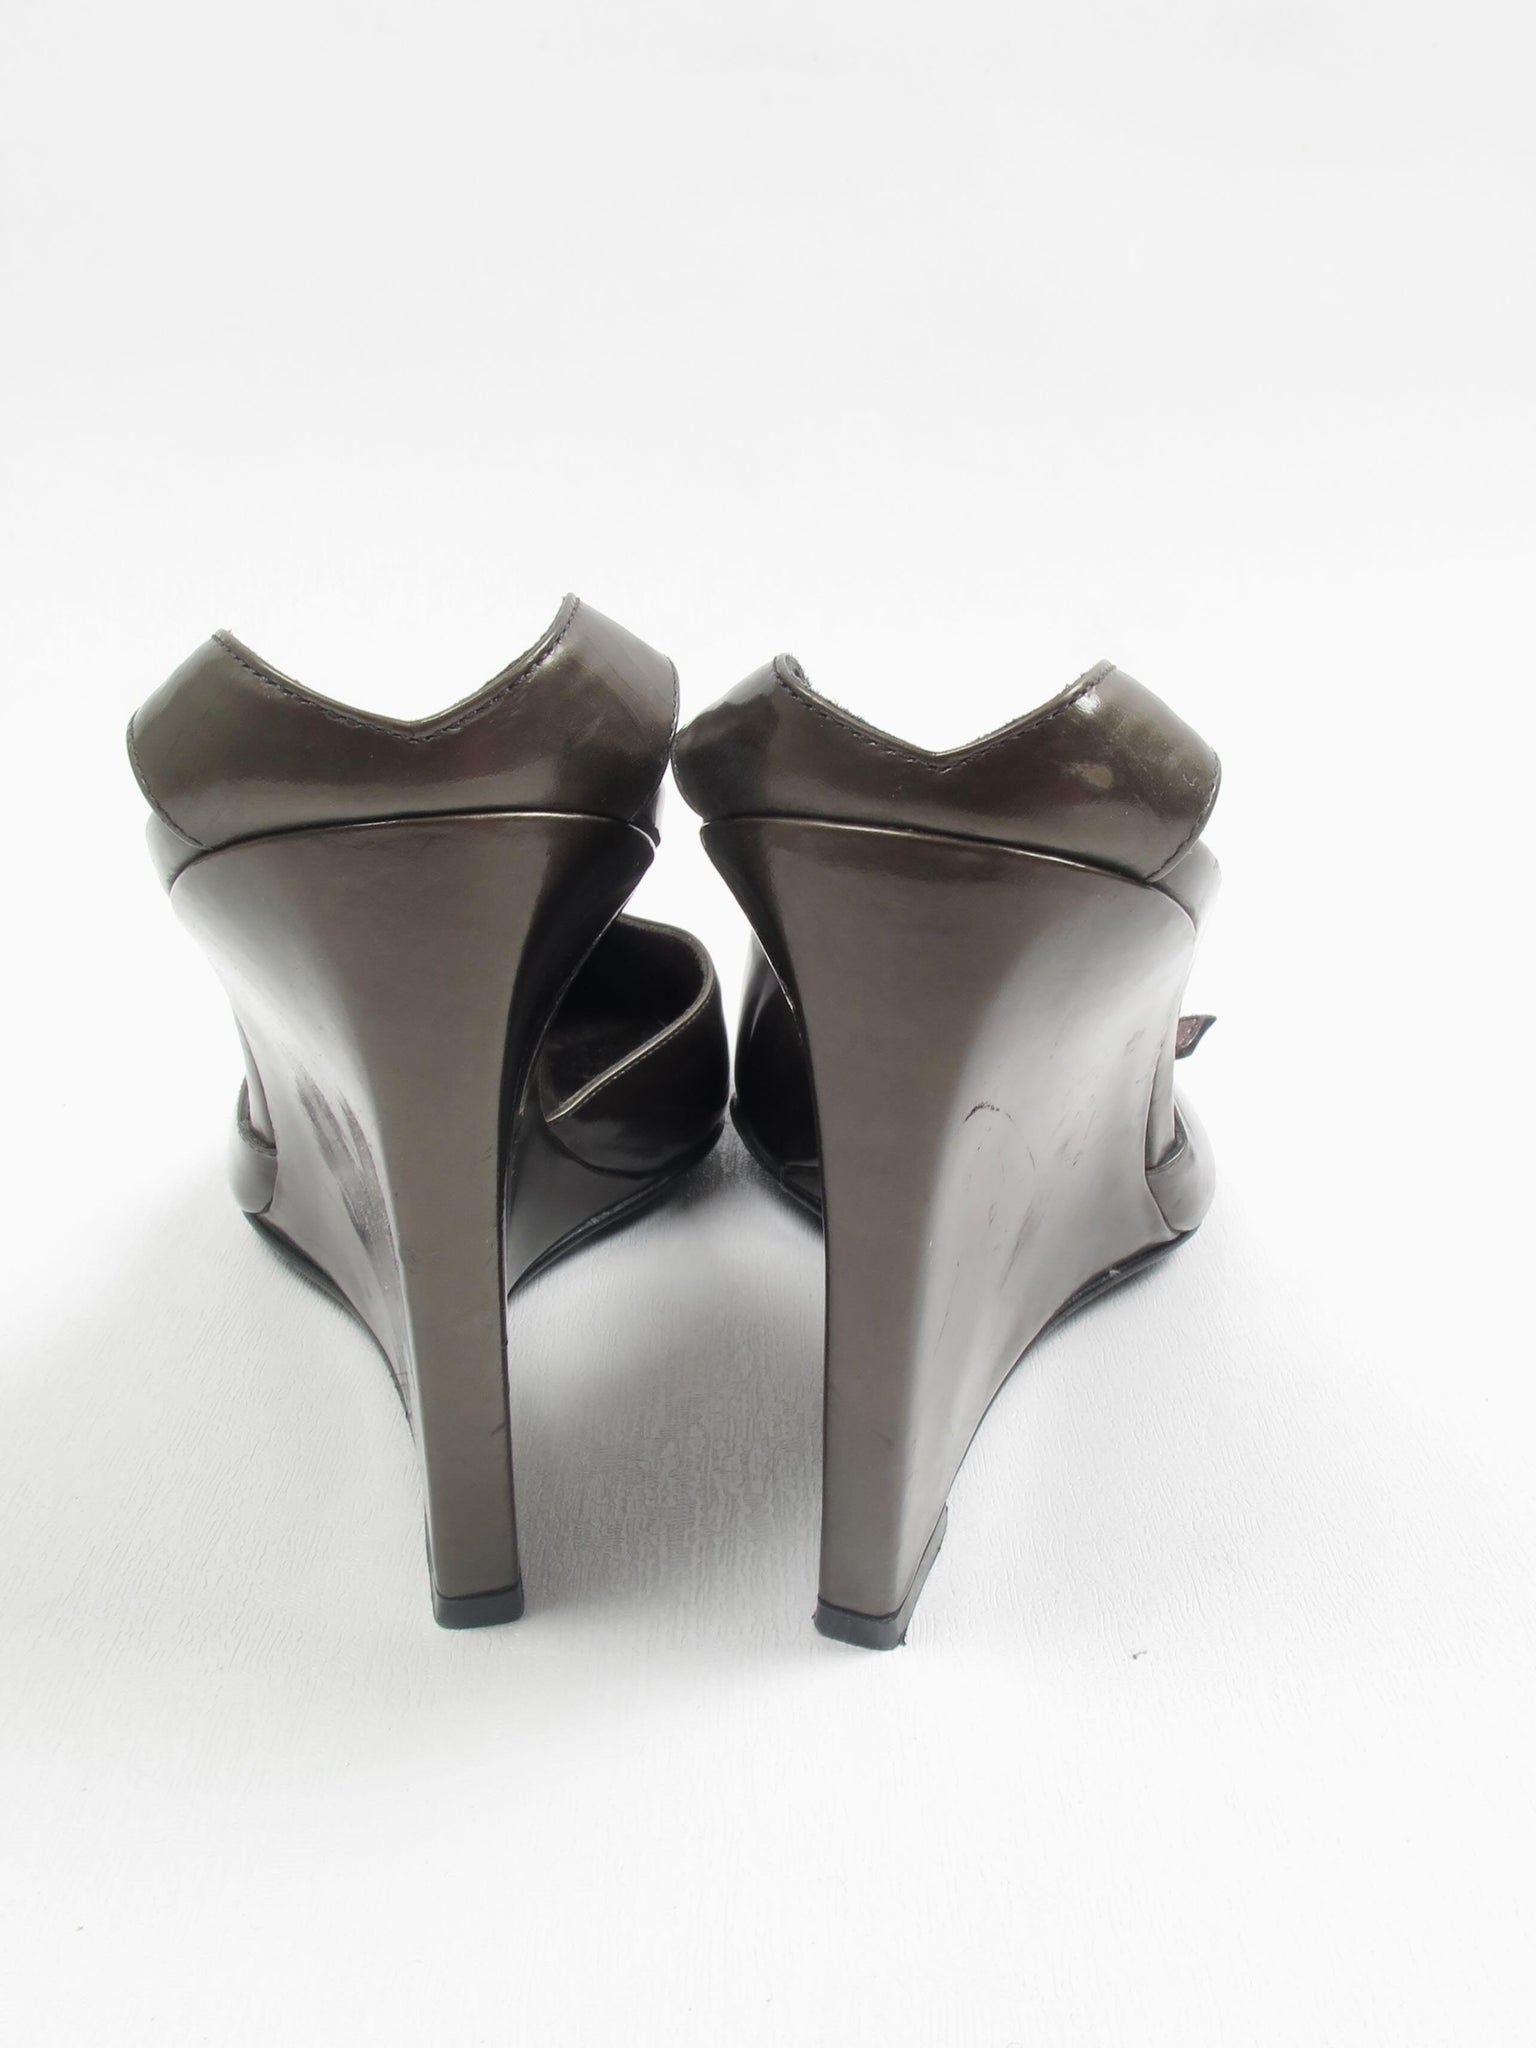 Women's Sergio Rossi Metallic Grey Heels 5/38 - The Harlequin